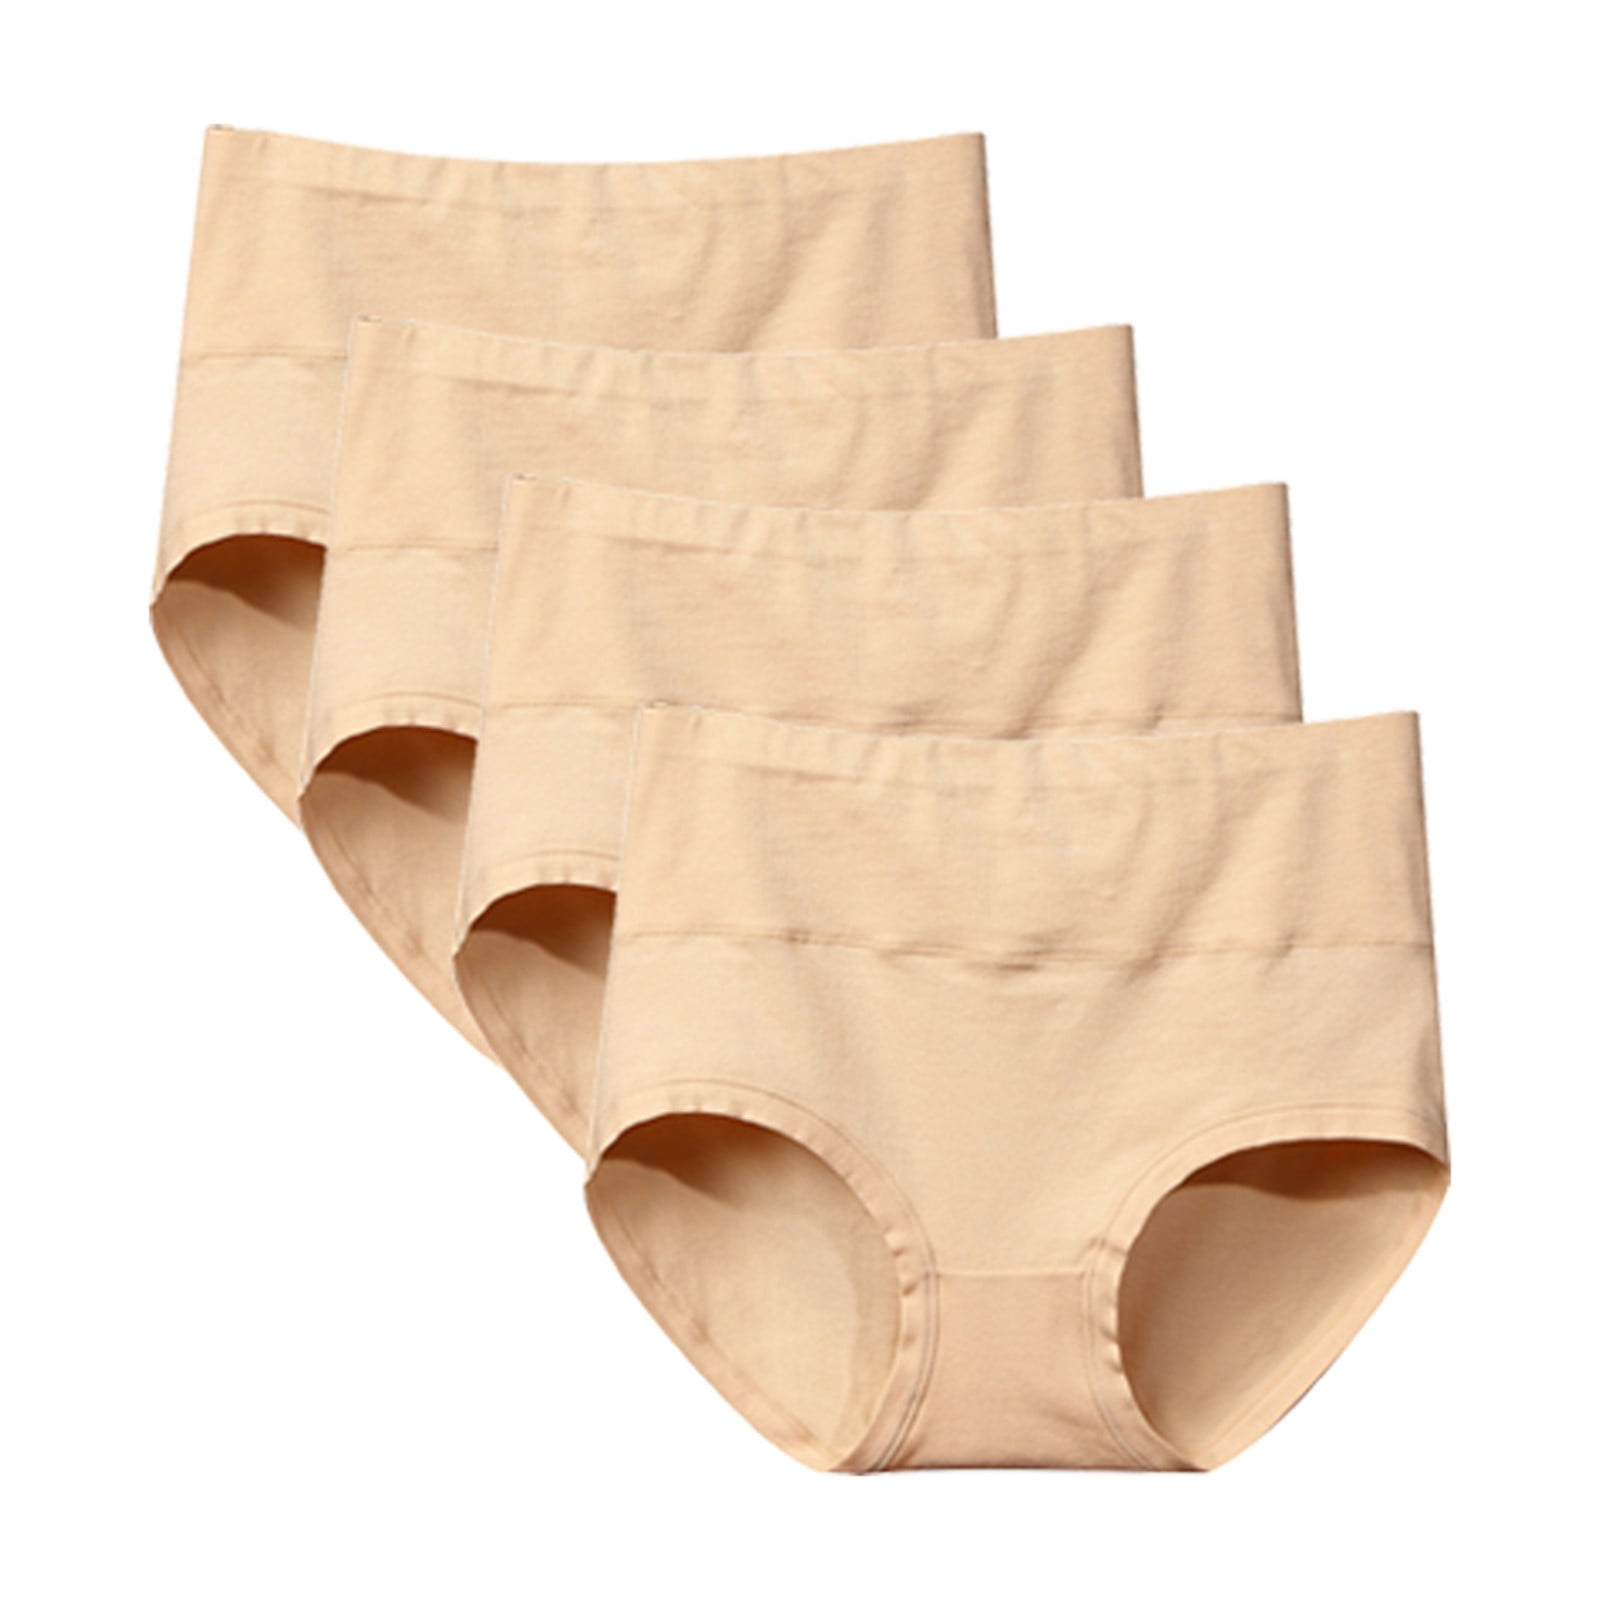 Assless Underpants for Women Women's Panty Cotton Panties Girls Sports  Lingerie Briefs Female Women's Underwear (Beige, M)